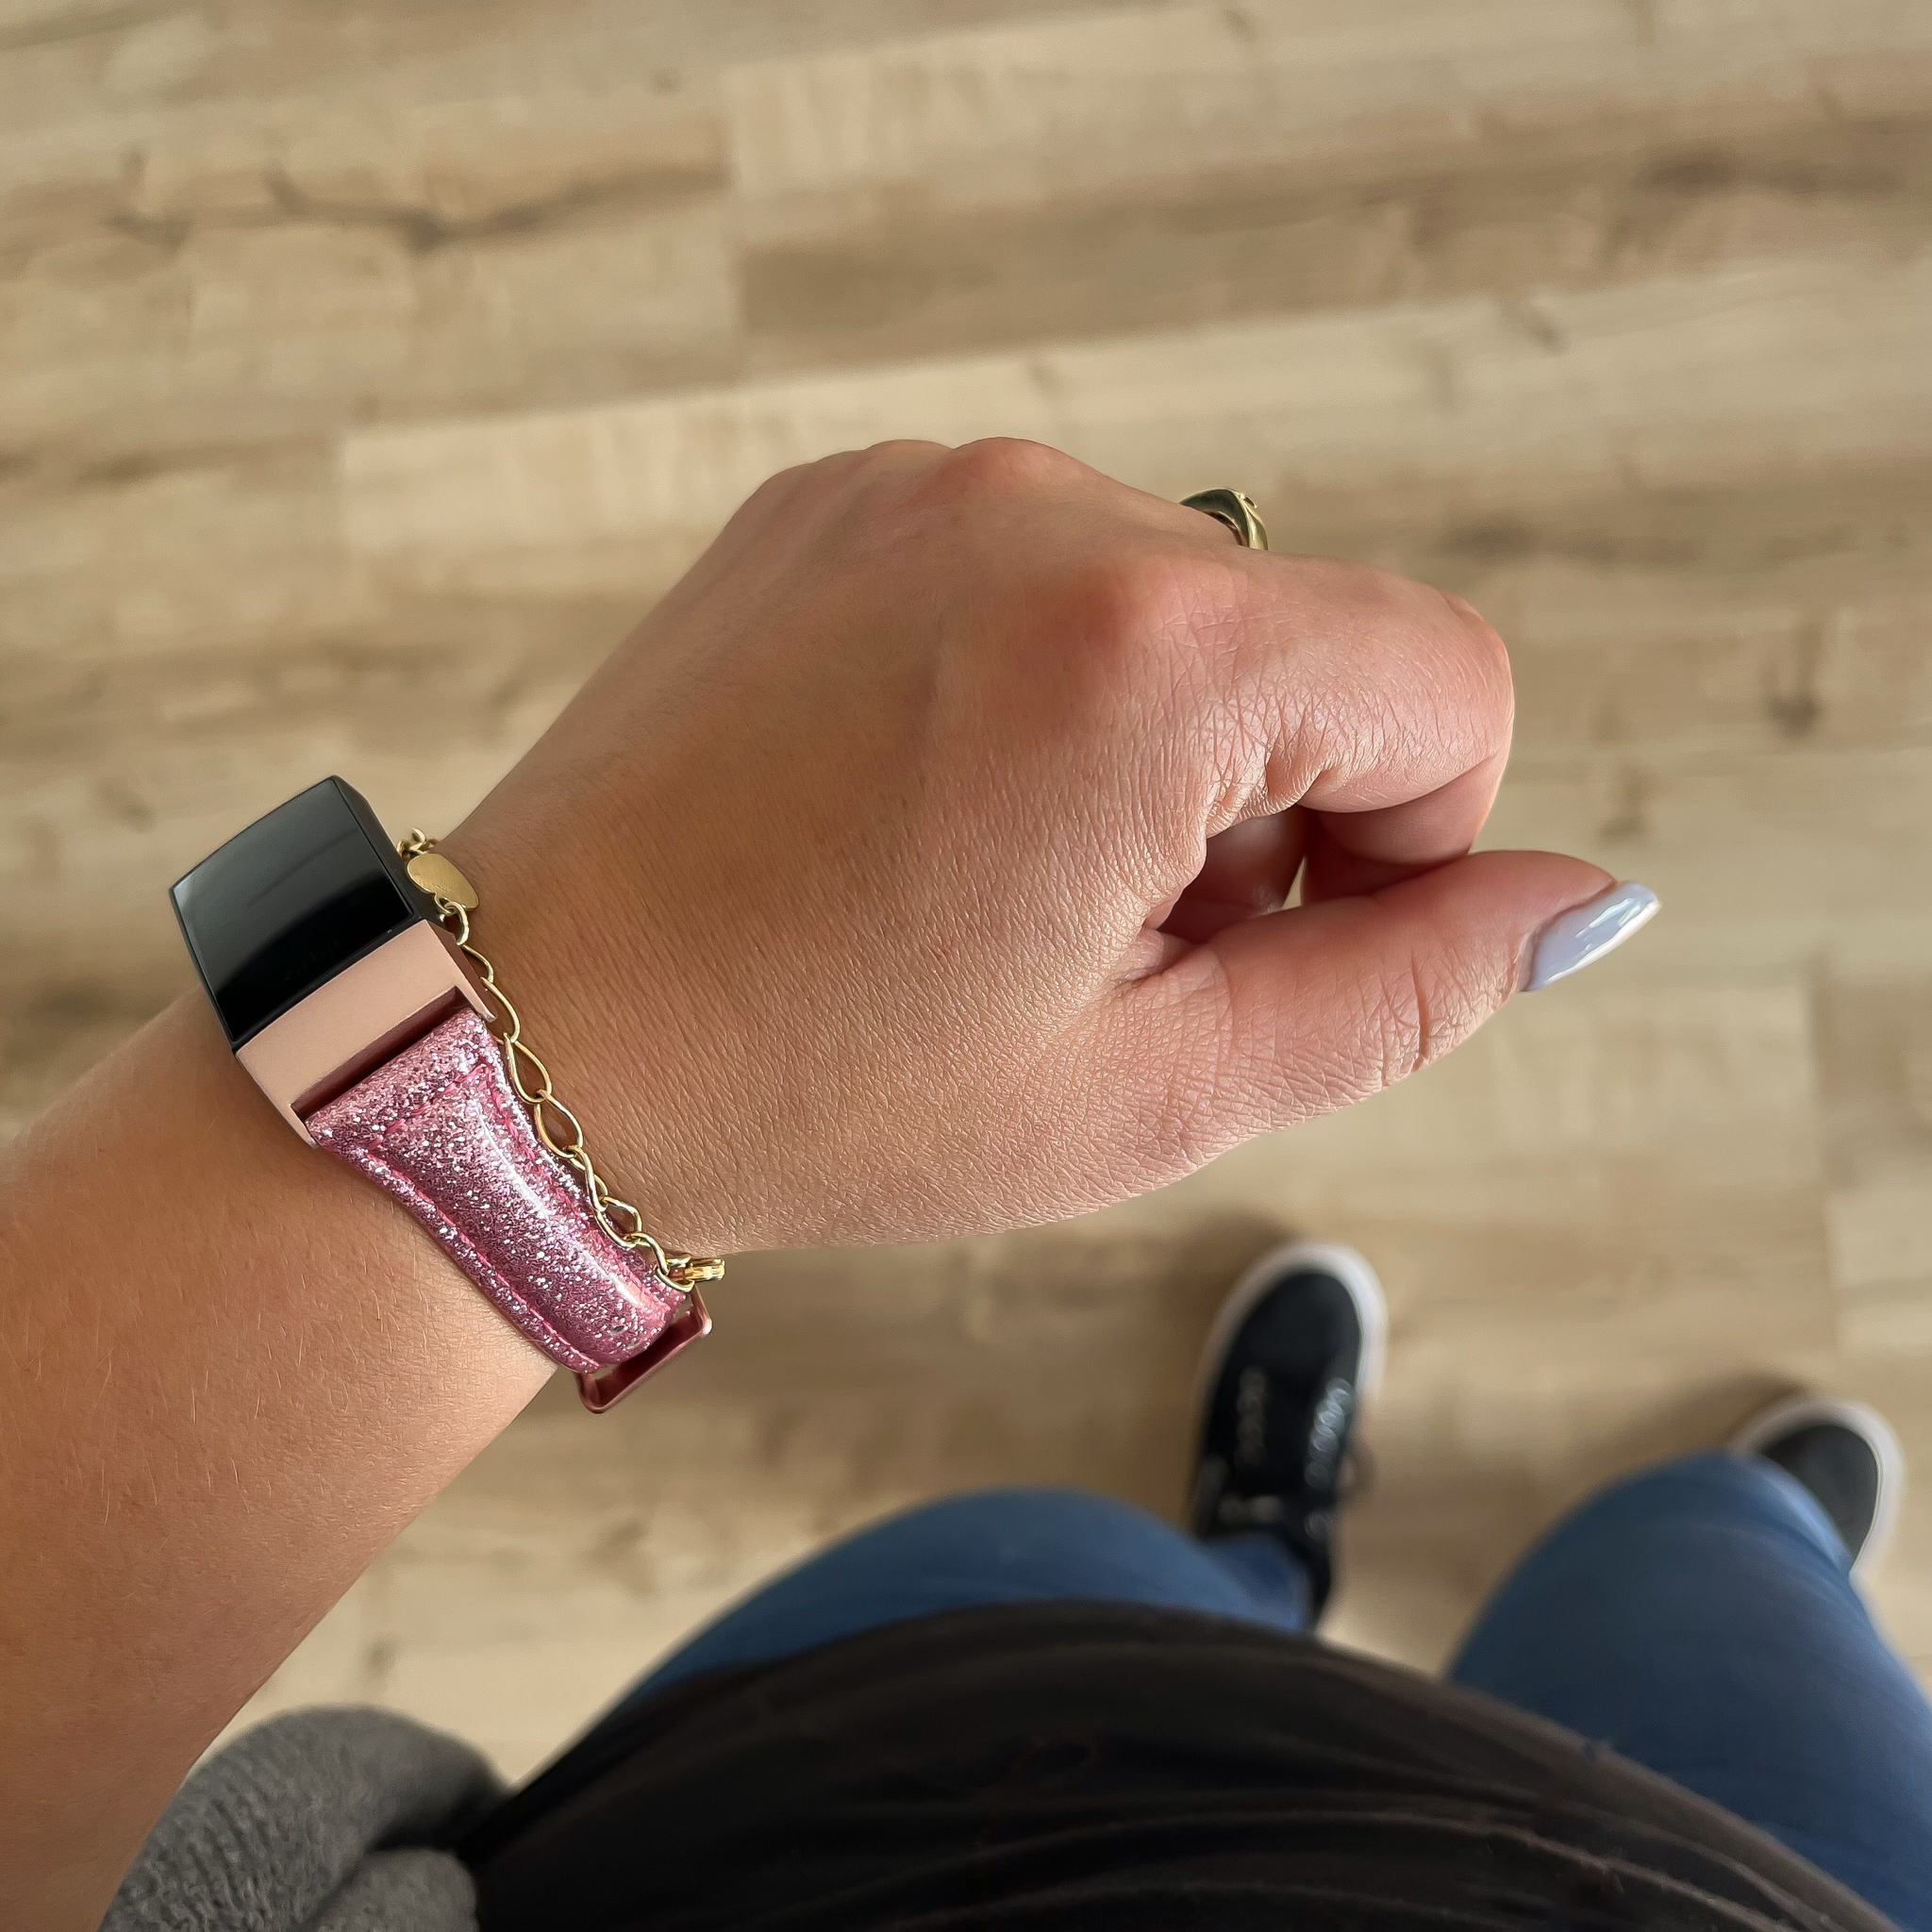 Cinturino in pelle glitter per Fitbit Charge 3 & 4 - rosa